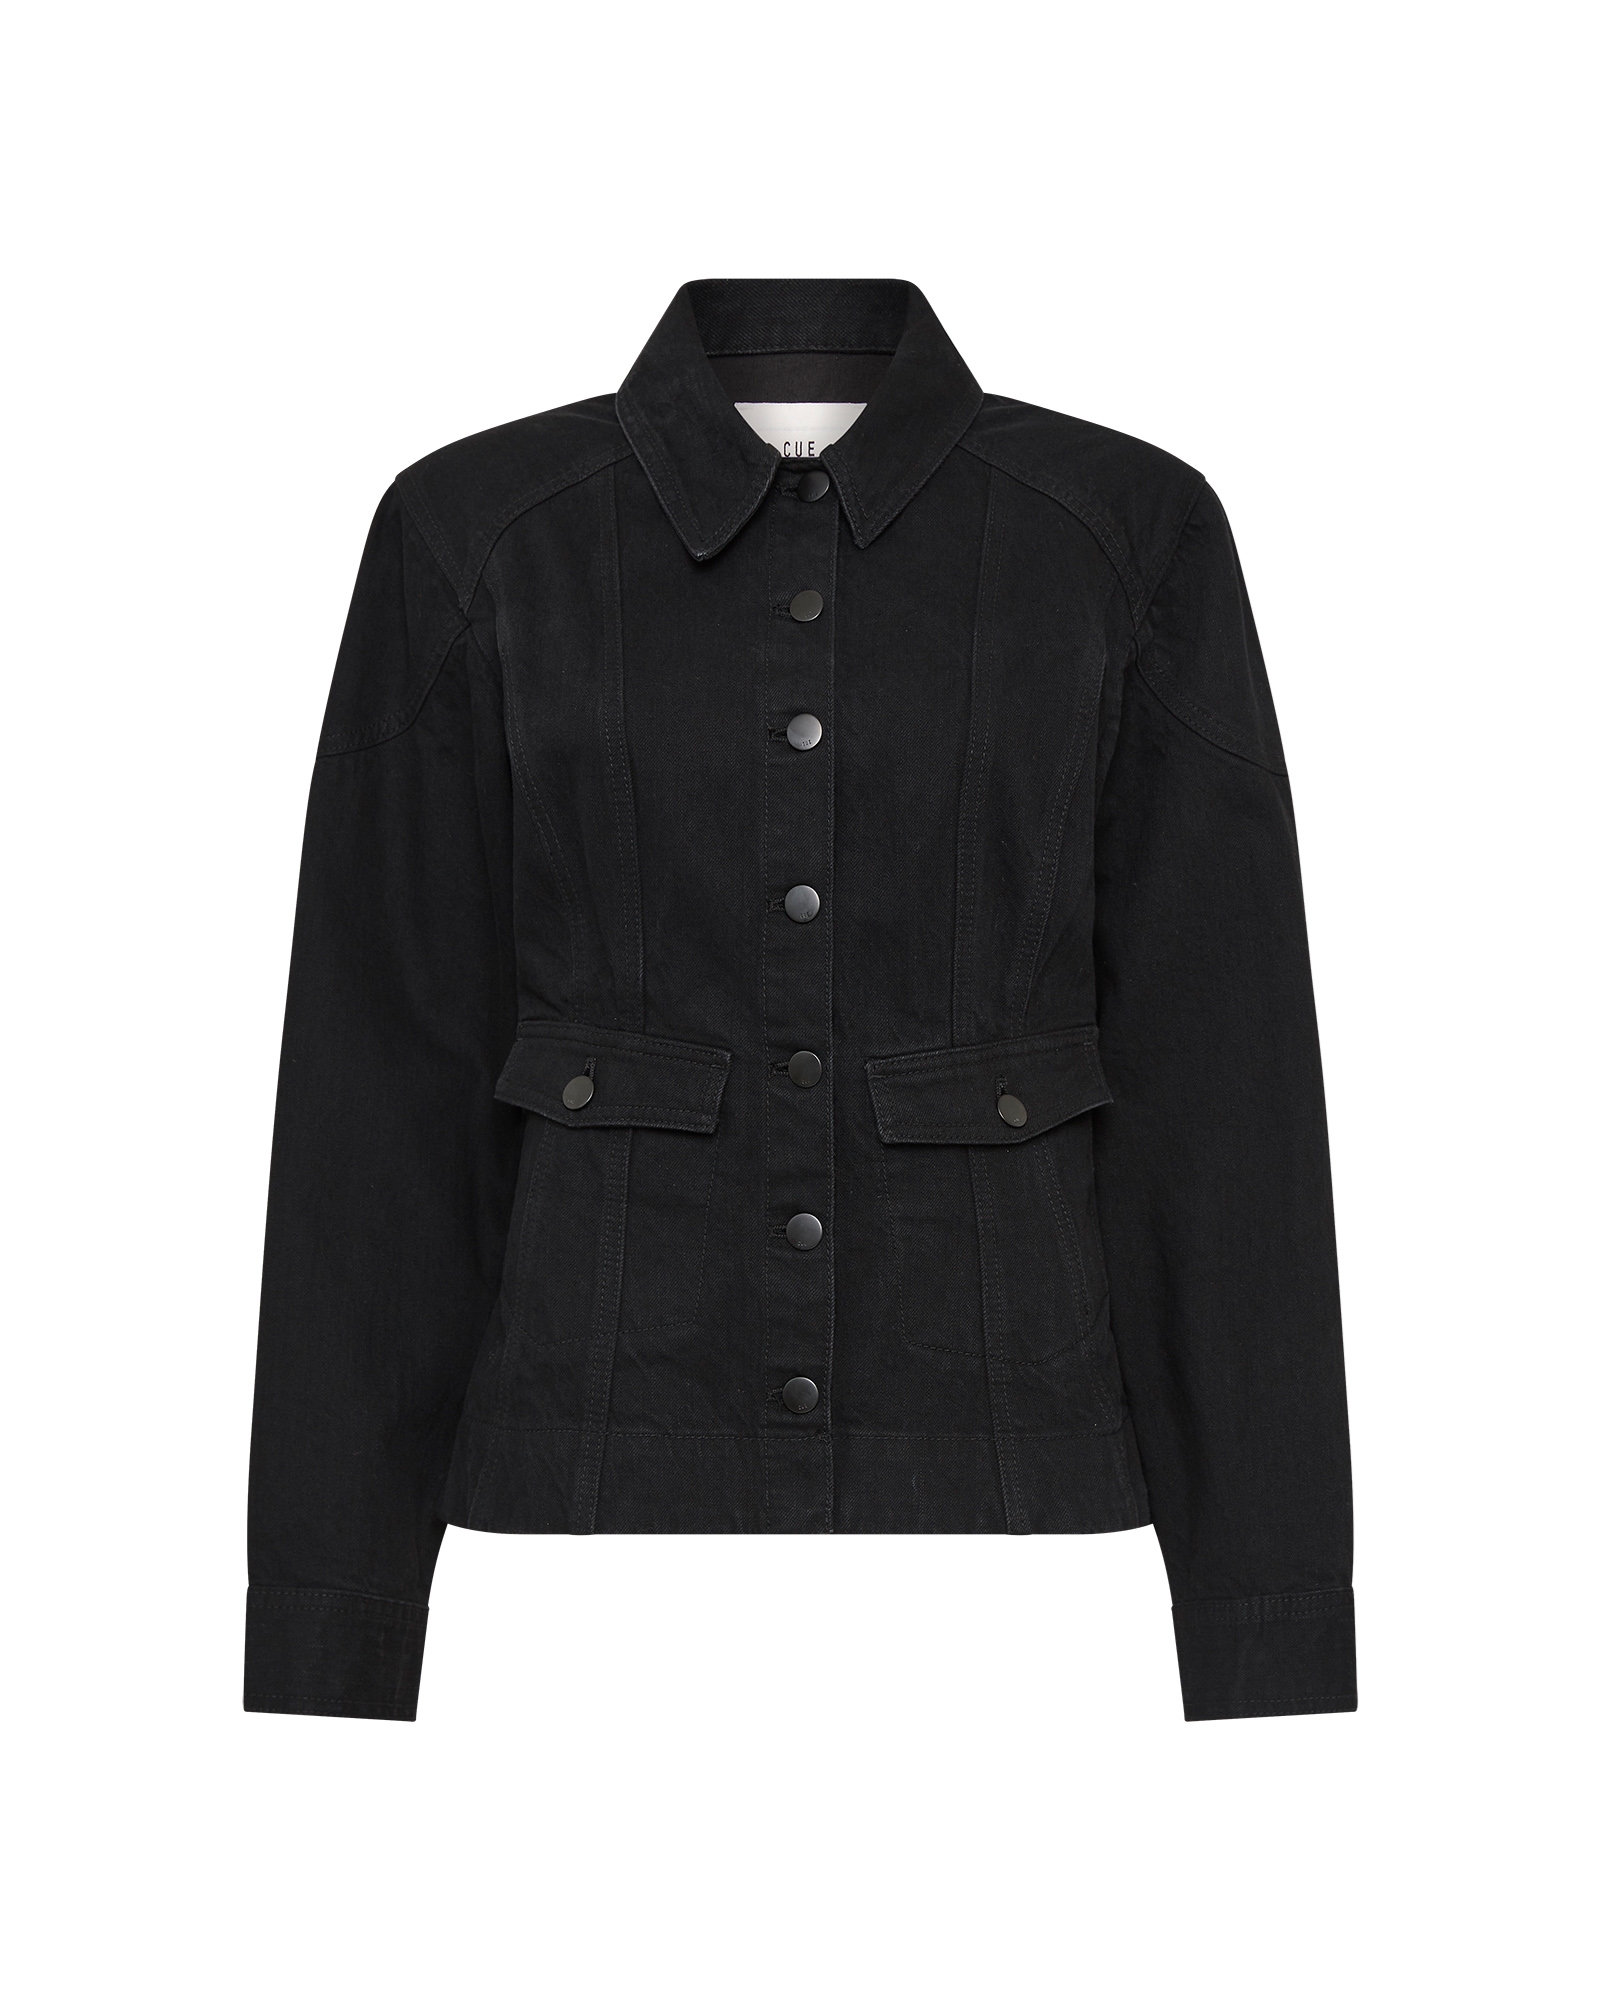 Jackets and Coats | Black Denim Waisted Panel Jacket | 990 Black